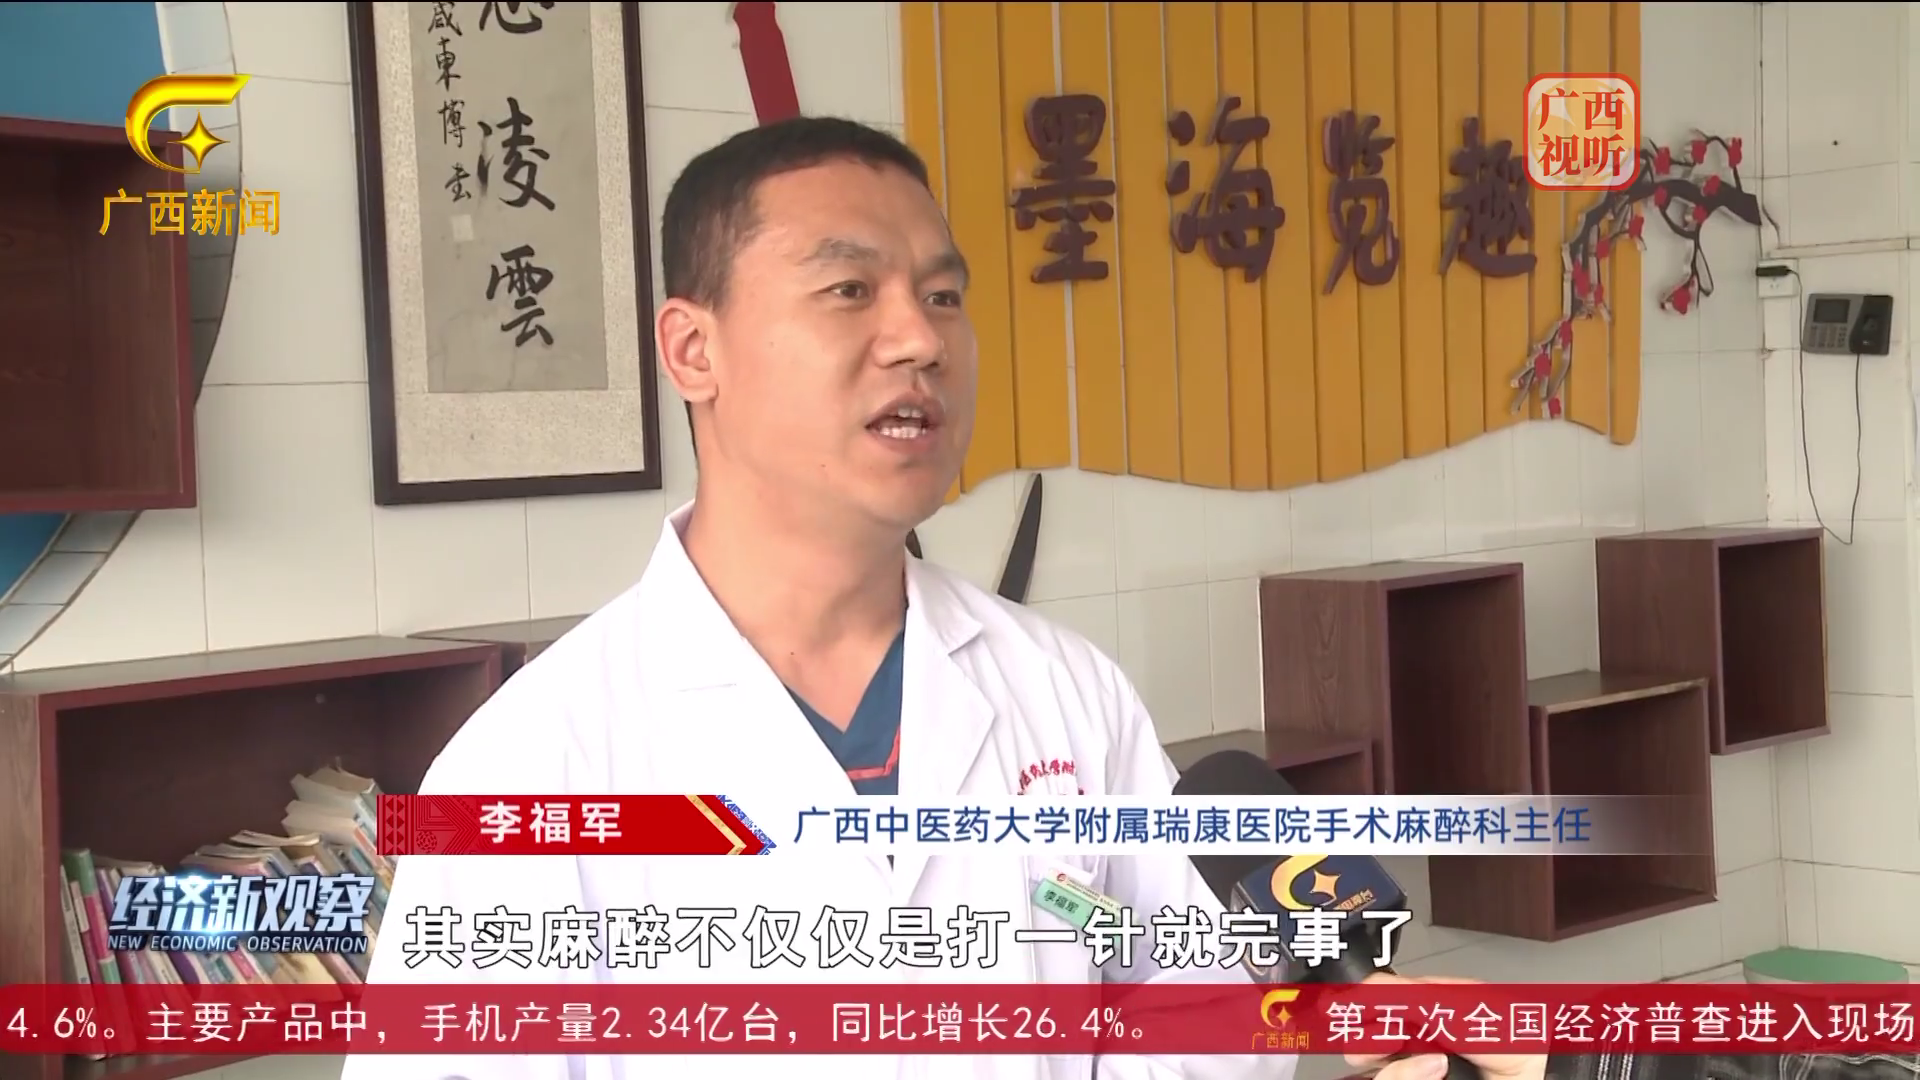 【经济新观察】【中国麻醉周】手术麻醉科医师走进小学 为孩子们上生命“必修课”